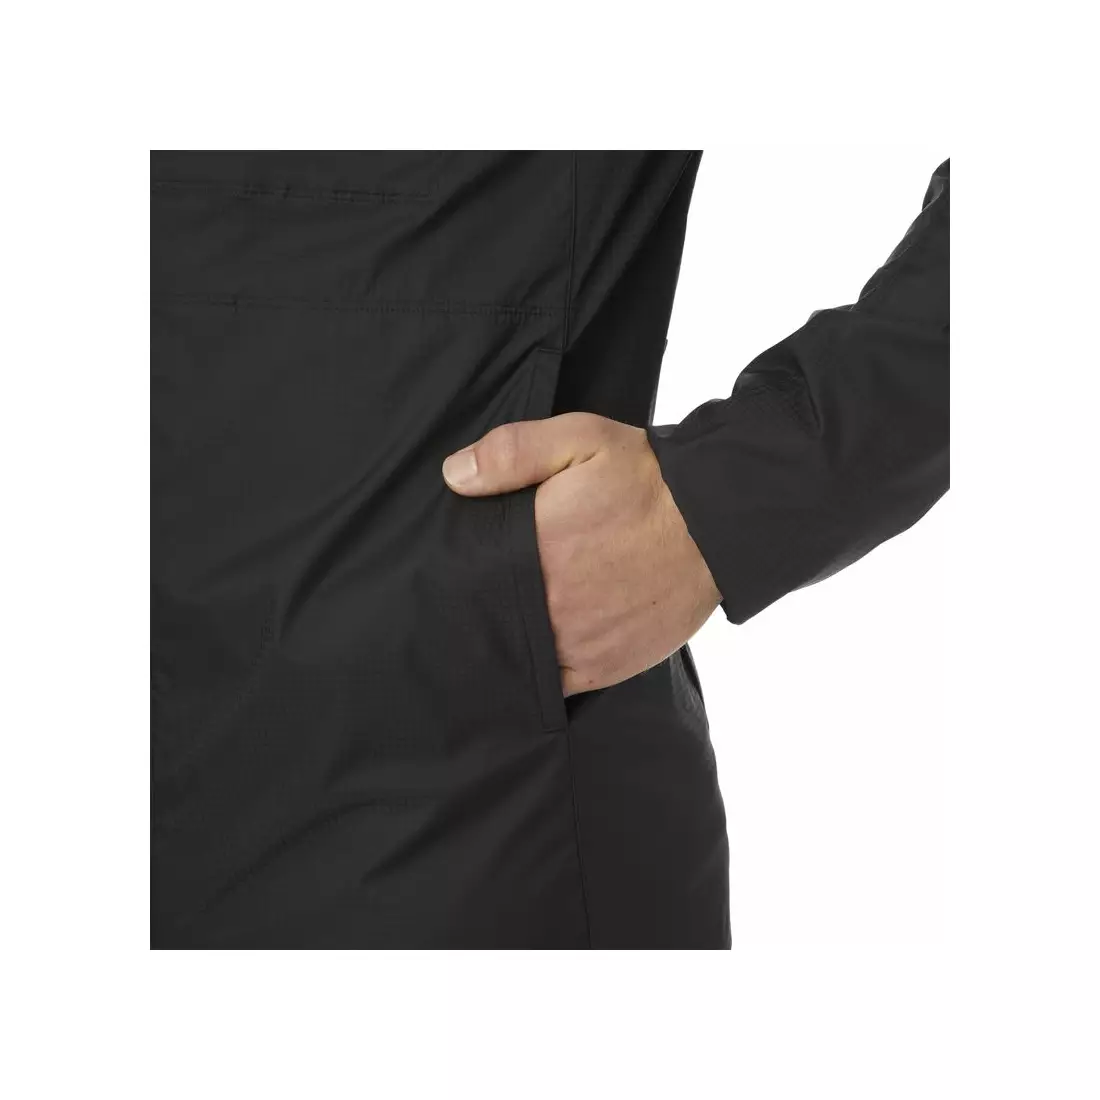 GIRO men's windbreaker jacket stow black GR-7096165